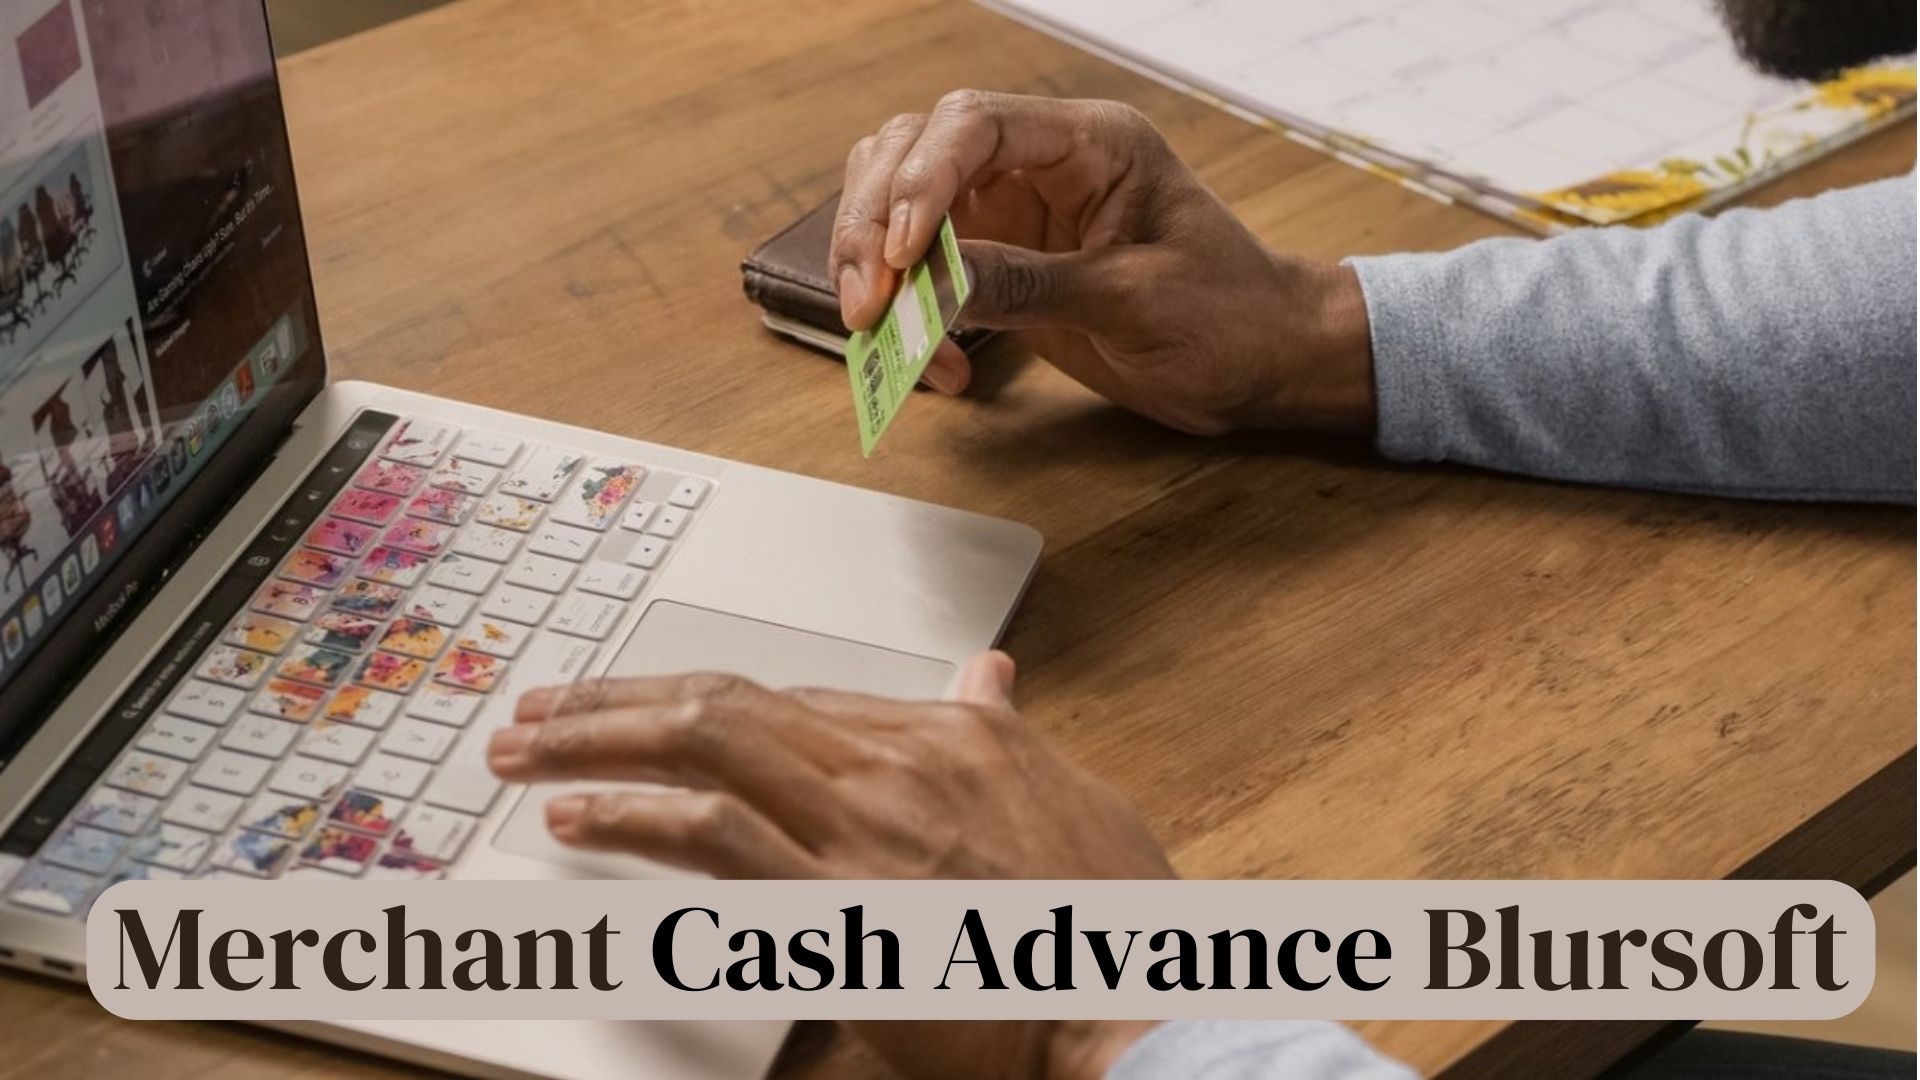 Business Merchant Cash Advance Blursoft Overview